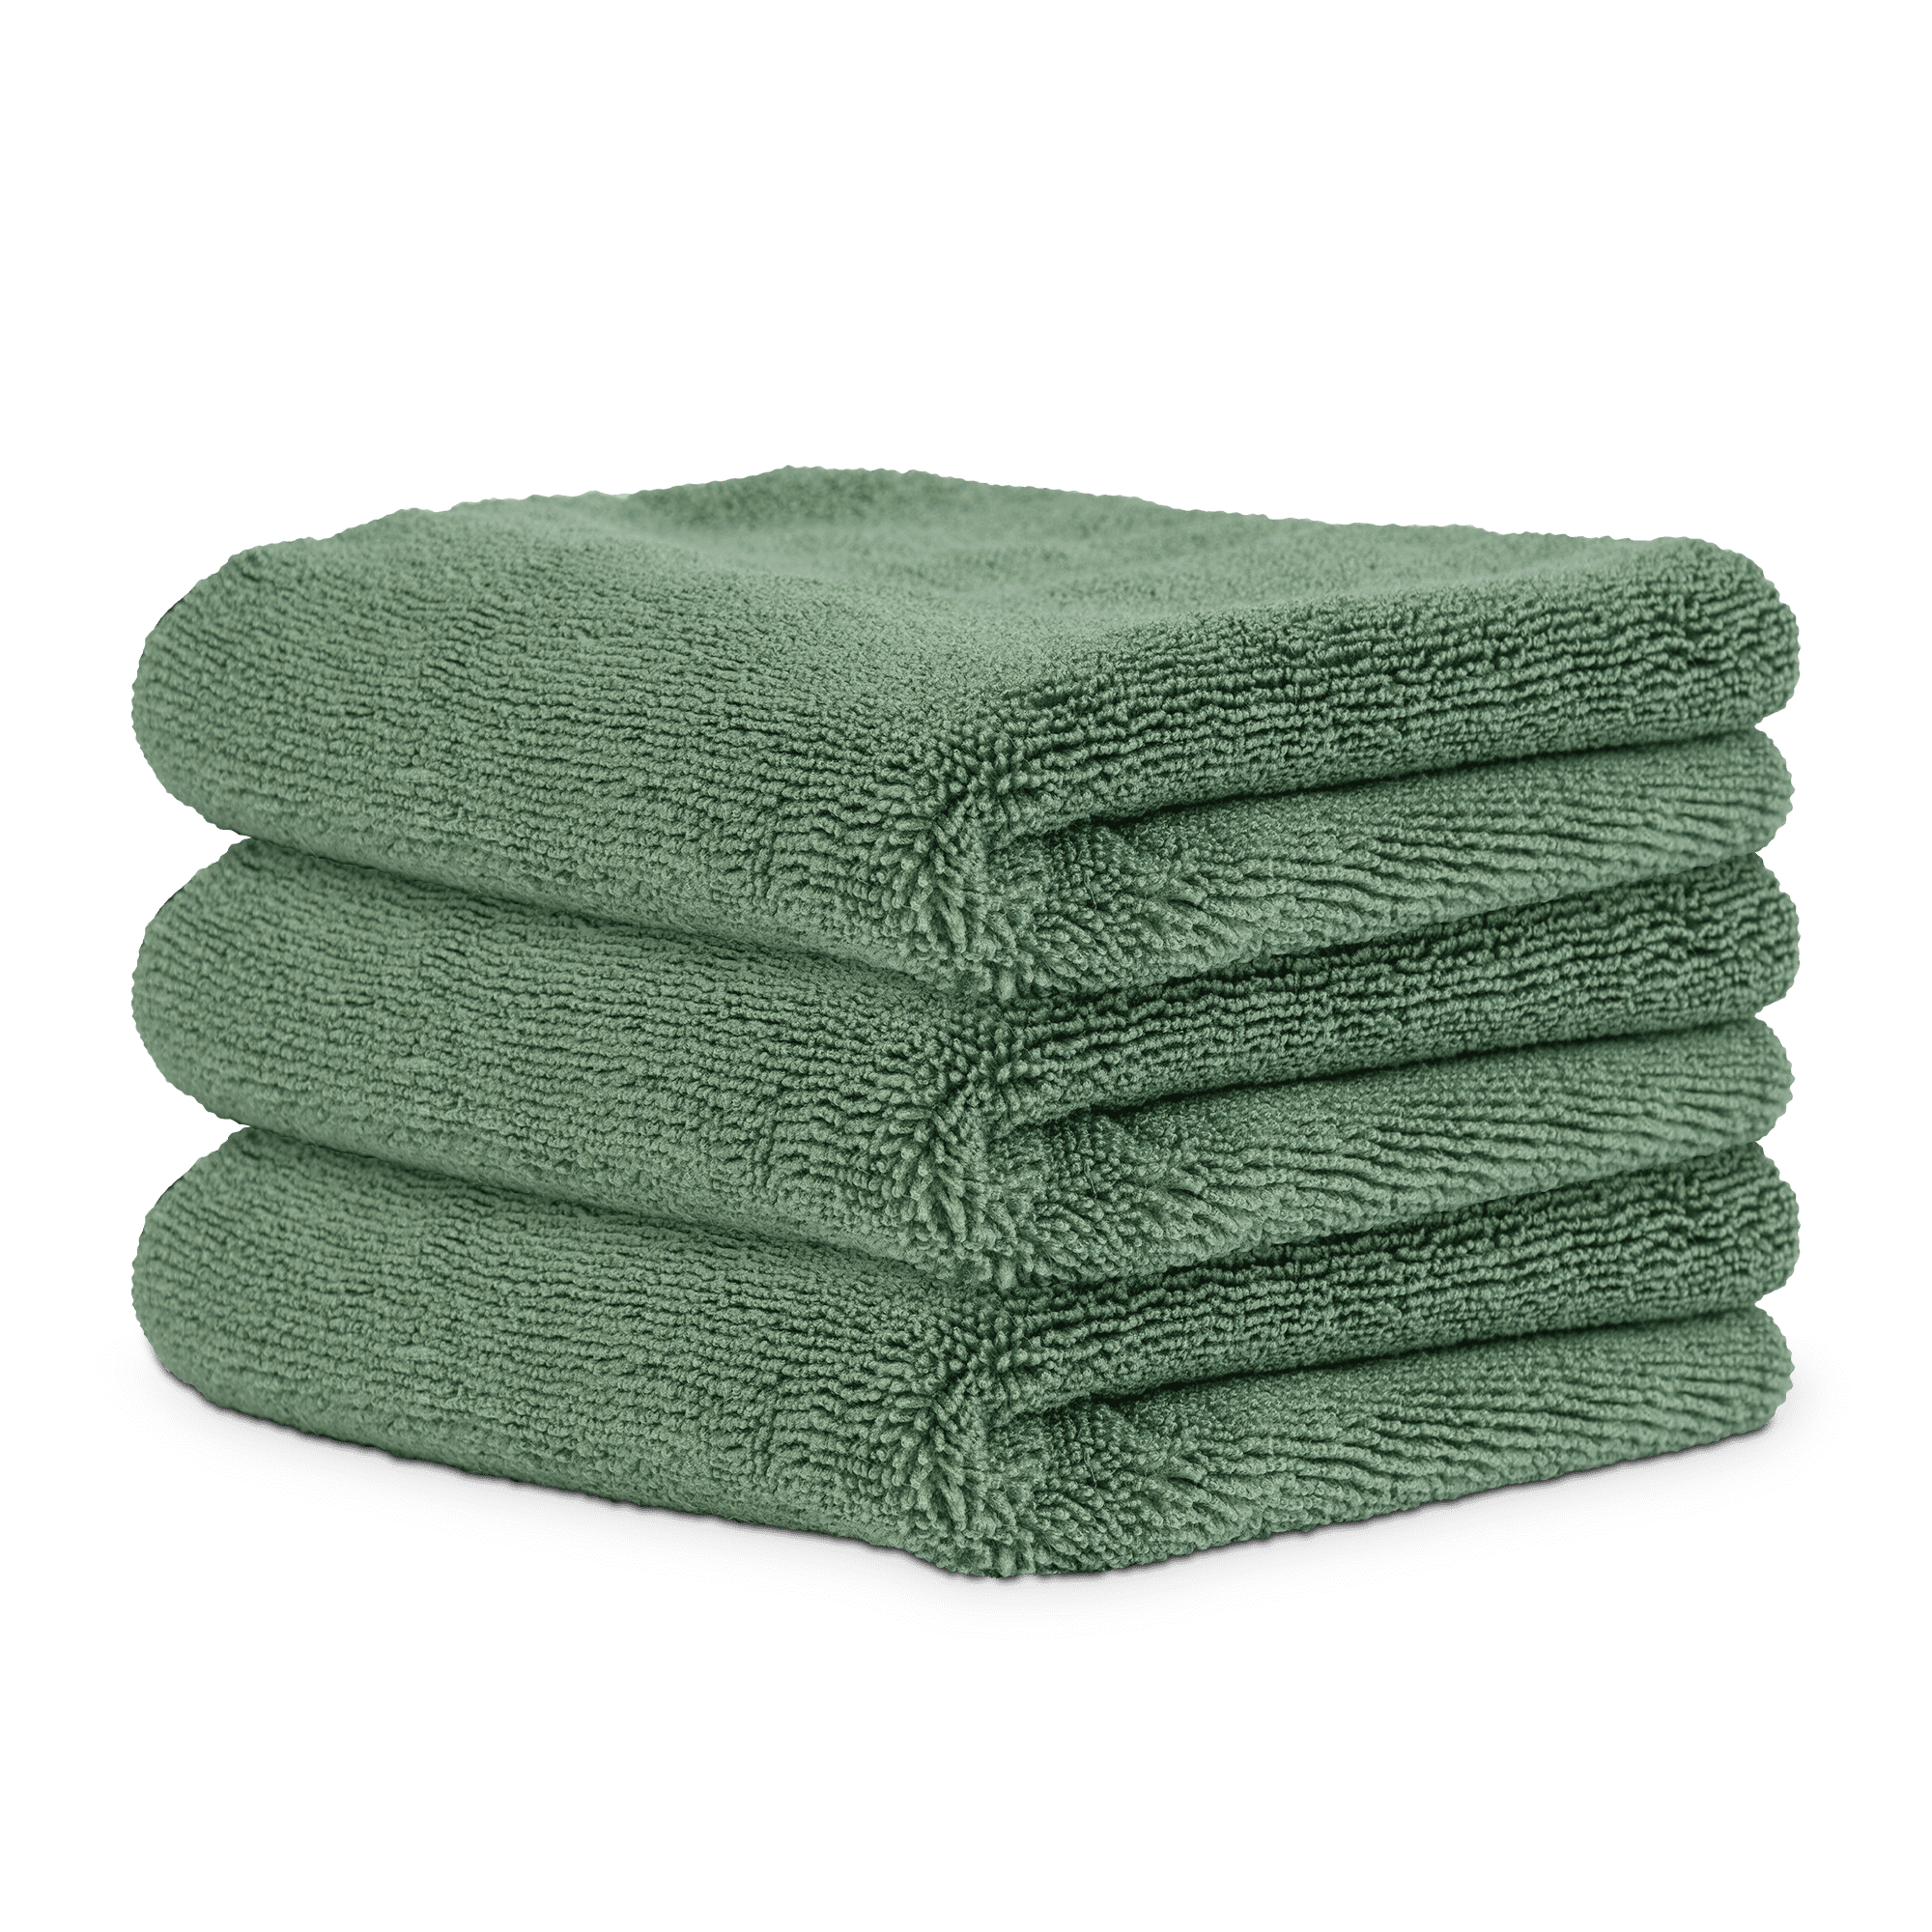 Chemical Guys Premium Microfiber Detailing Towels - Olive Green - 3 Pack